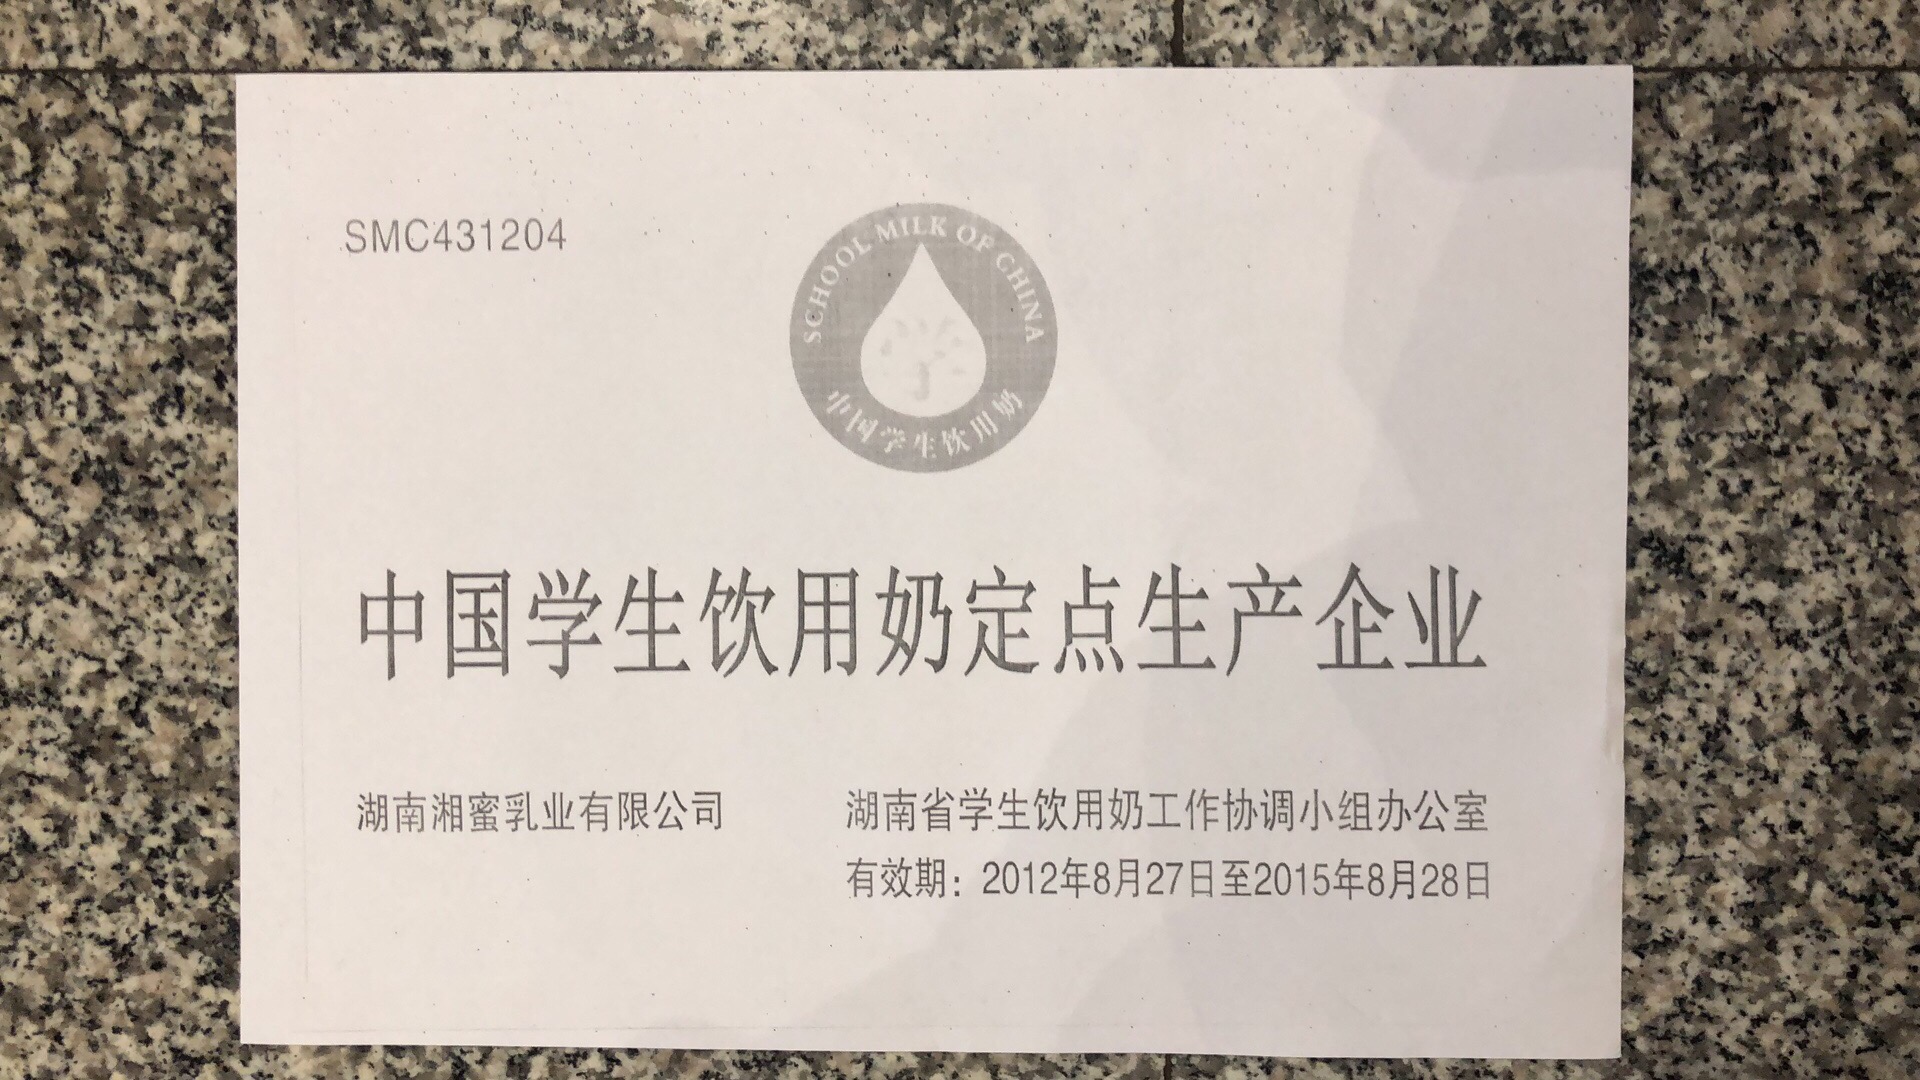 湖南湘蜜乳业有限公司在2012年-2015年期间为“中国学生饮用奶定点生产企业”。受访者供图